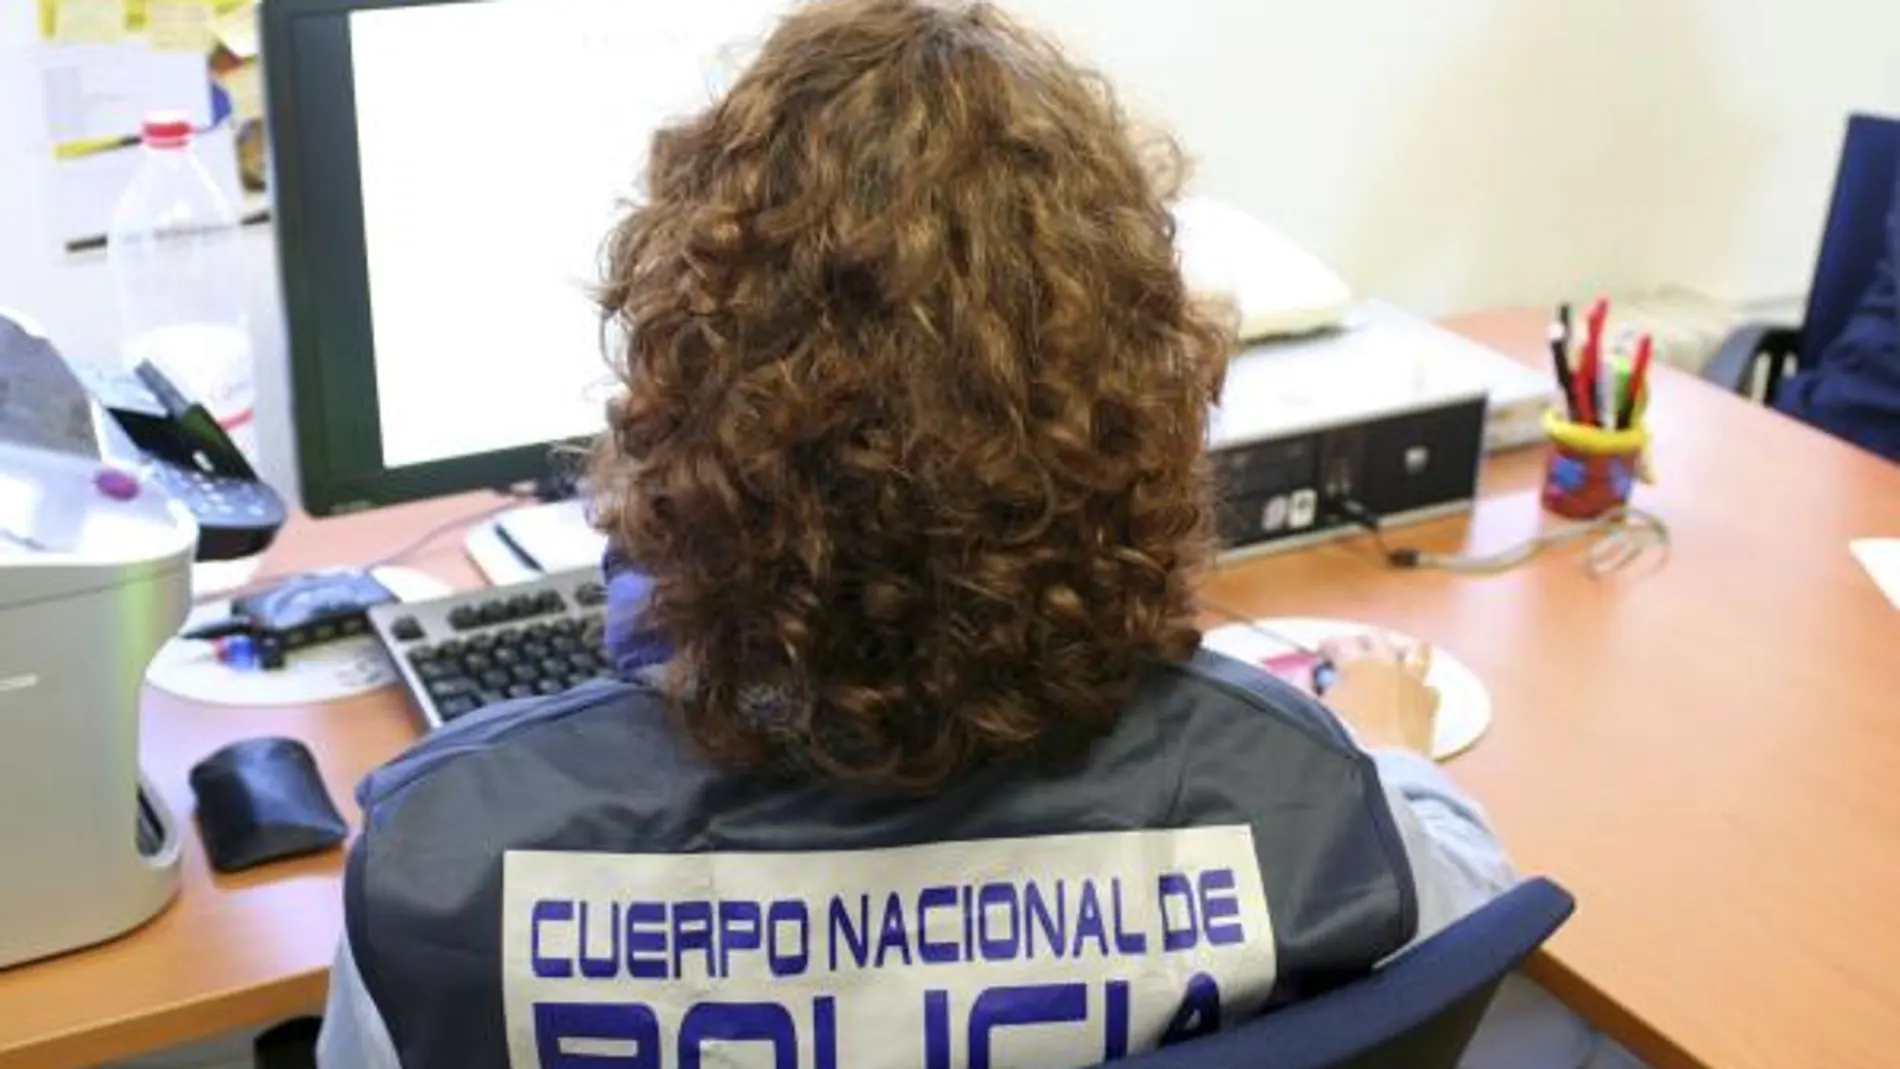 Dos detenidos en Madrid por vender decodificadores piratas para acceder a canales de pago